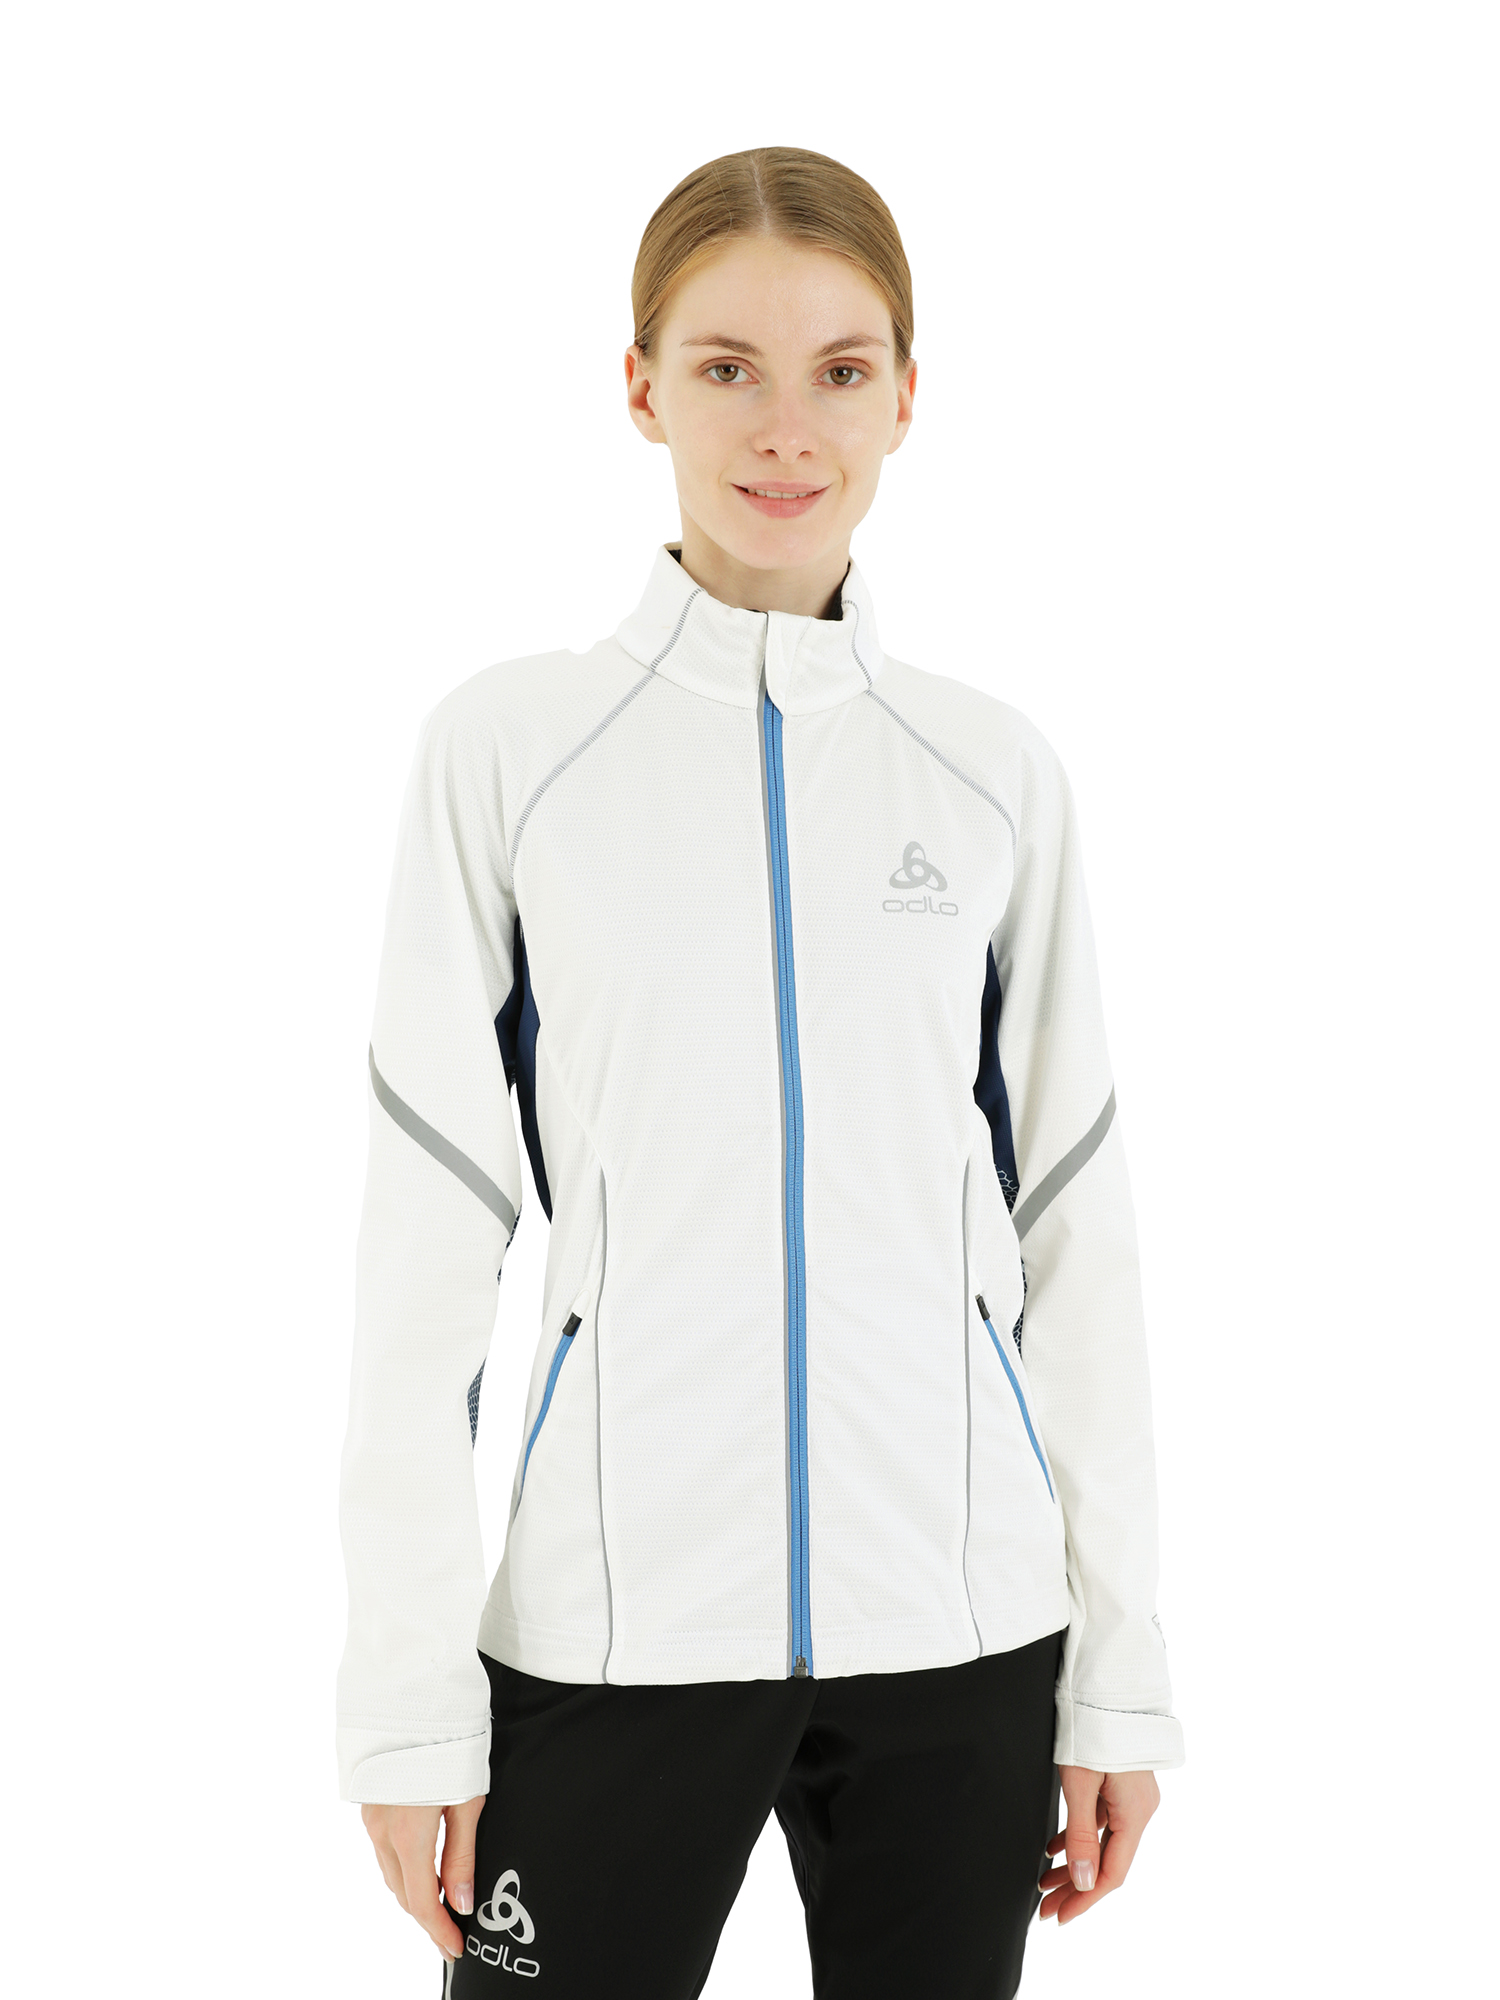 Спортивная куртка женская Odlo Jacket Frequency белая XL